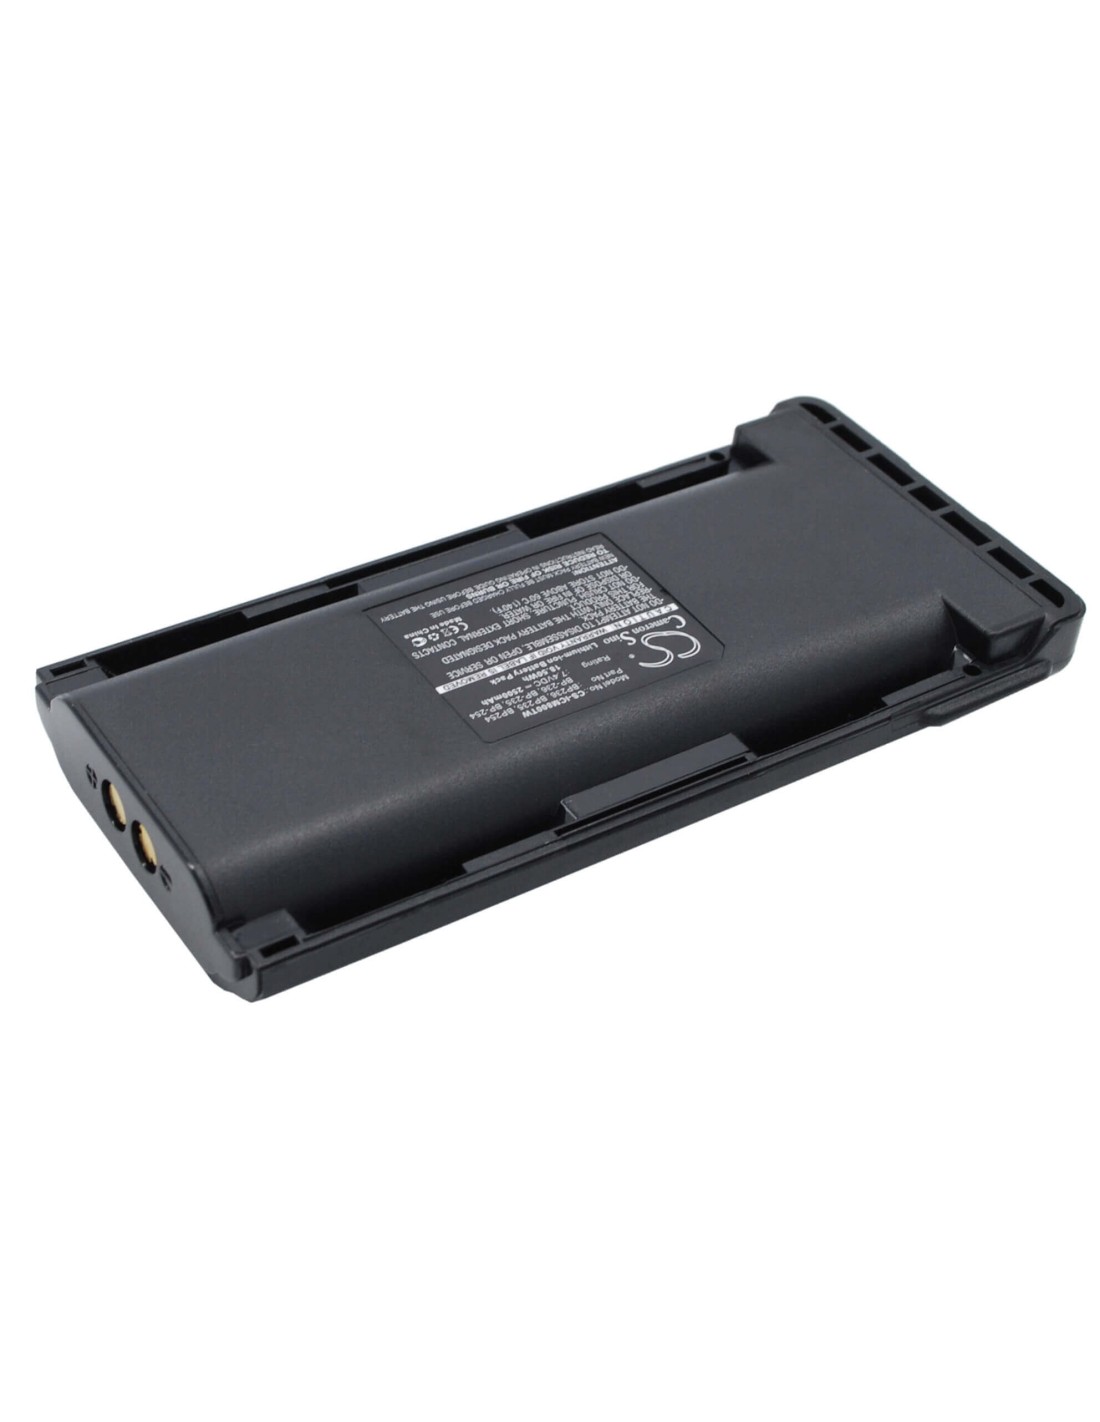 Battery for Icom Ic-f70, Ic-f80, Ic-f70d 7.4V, 2500mAh - 18.50Wh